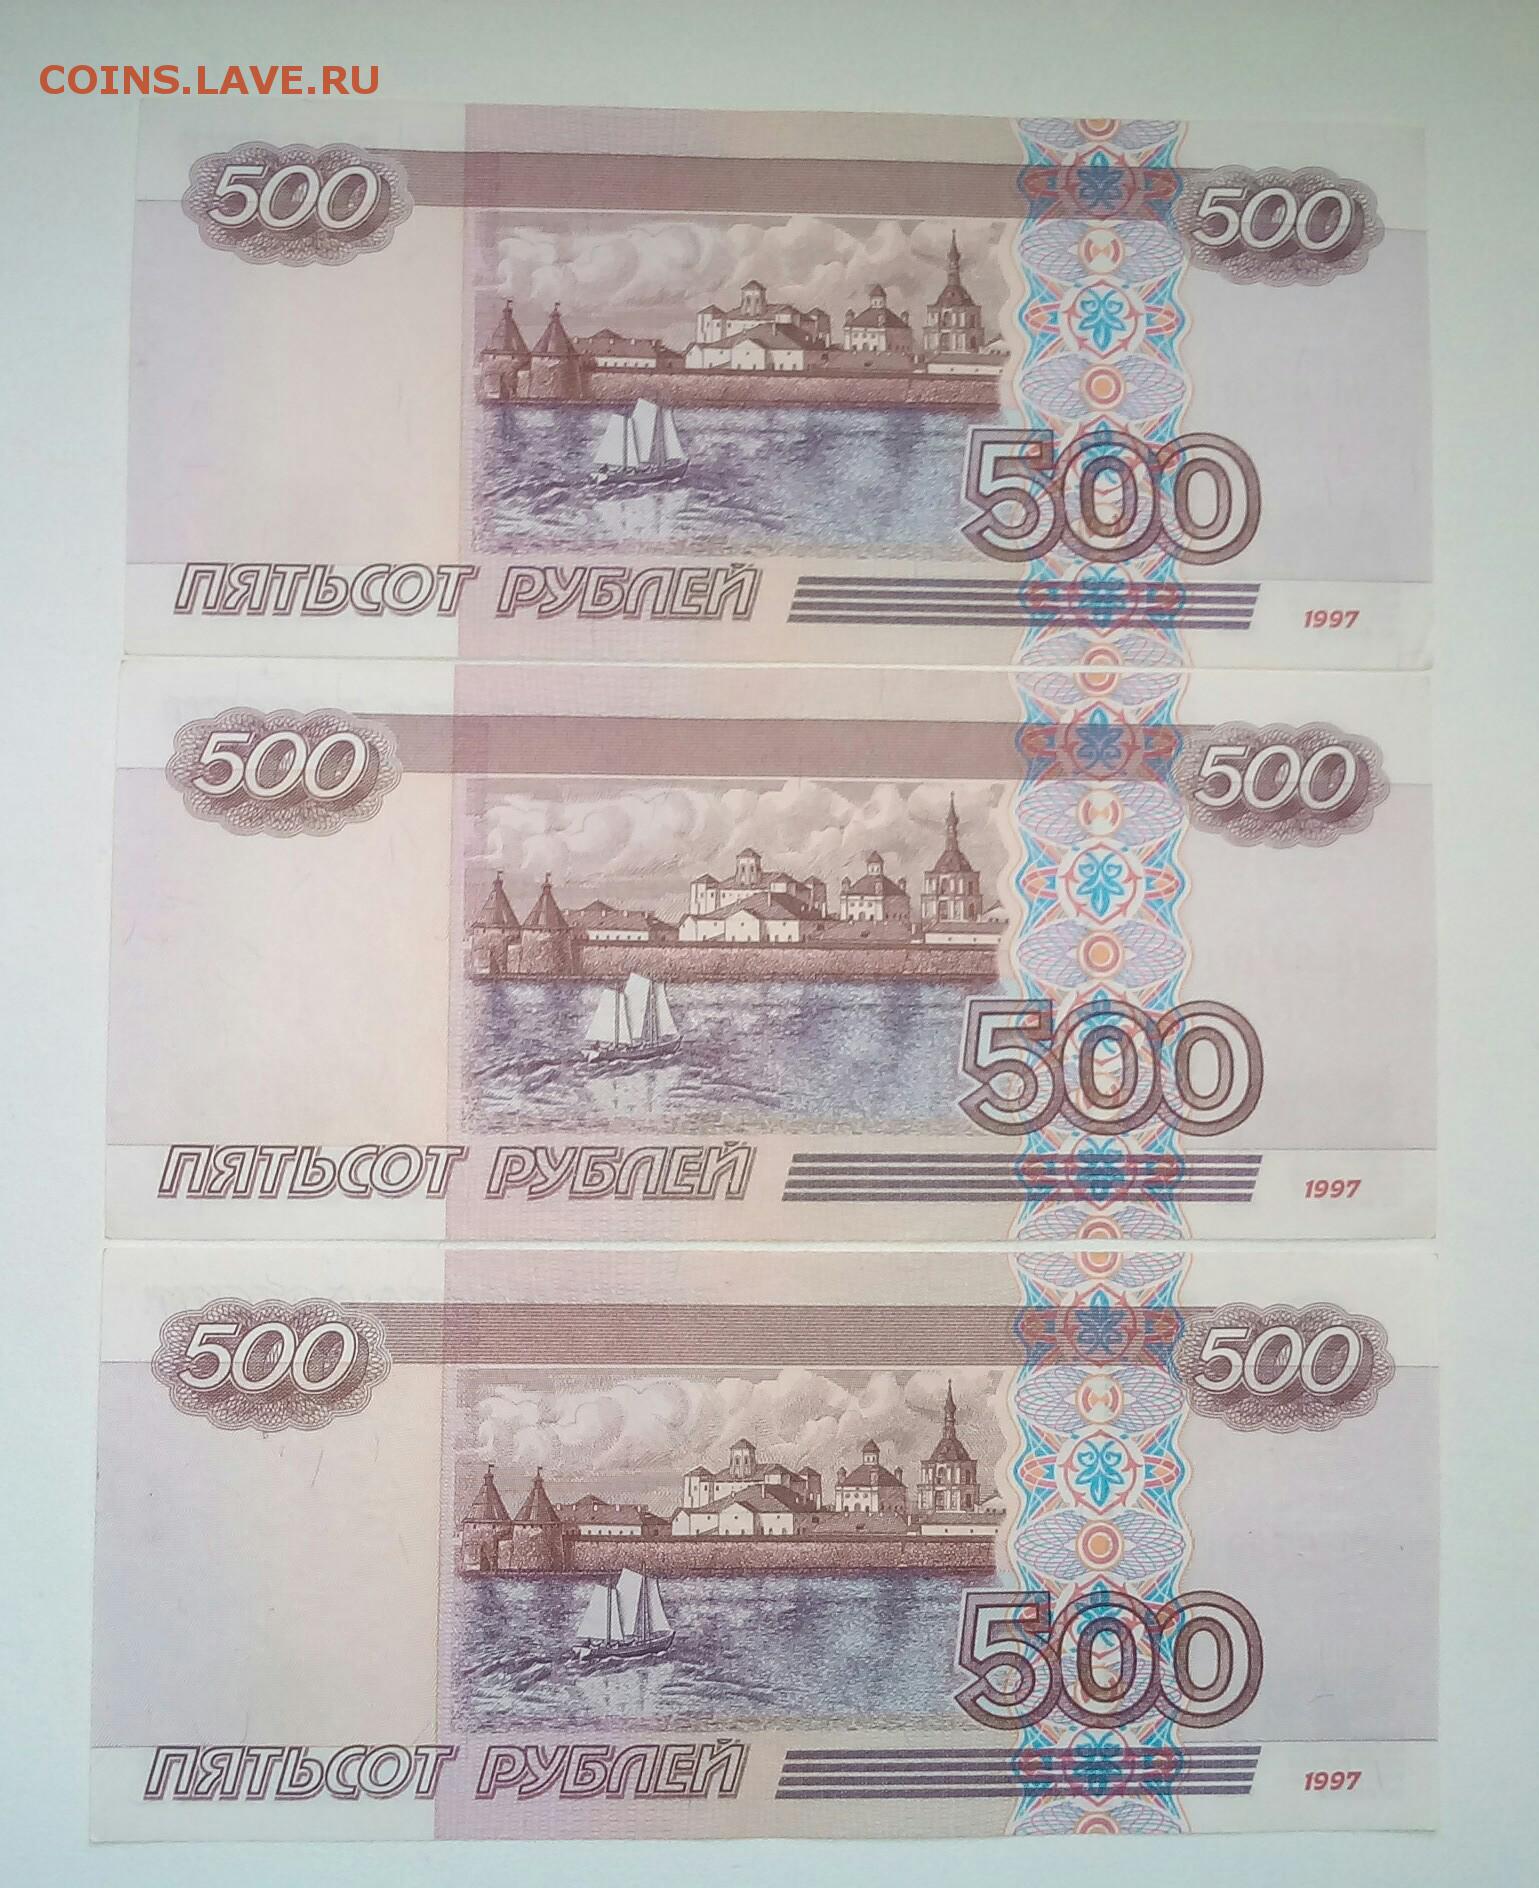 Программа 500 рублей. Купюра 500 рублей модификации 2001 года. 500 Рублей 1997 года бумажные модификация 2001. 500 Рублей 1997 года водяные знаки модификация 2001. 500 Рублей 2004 года модификации.